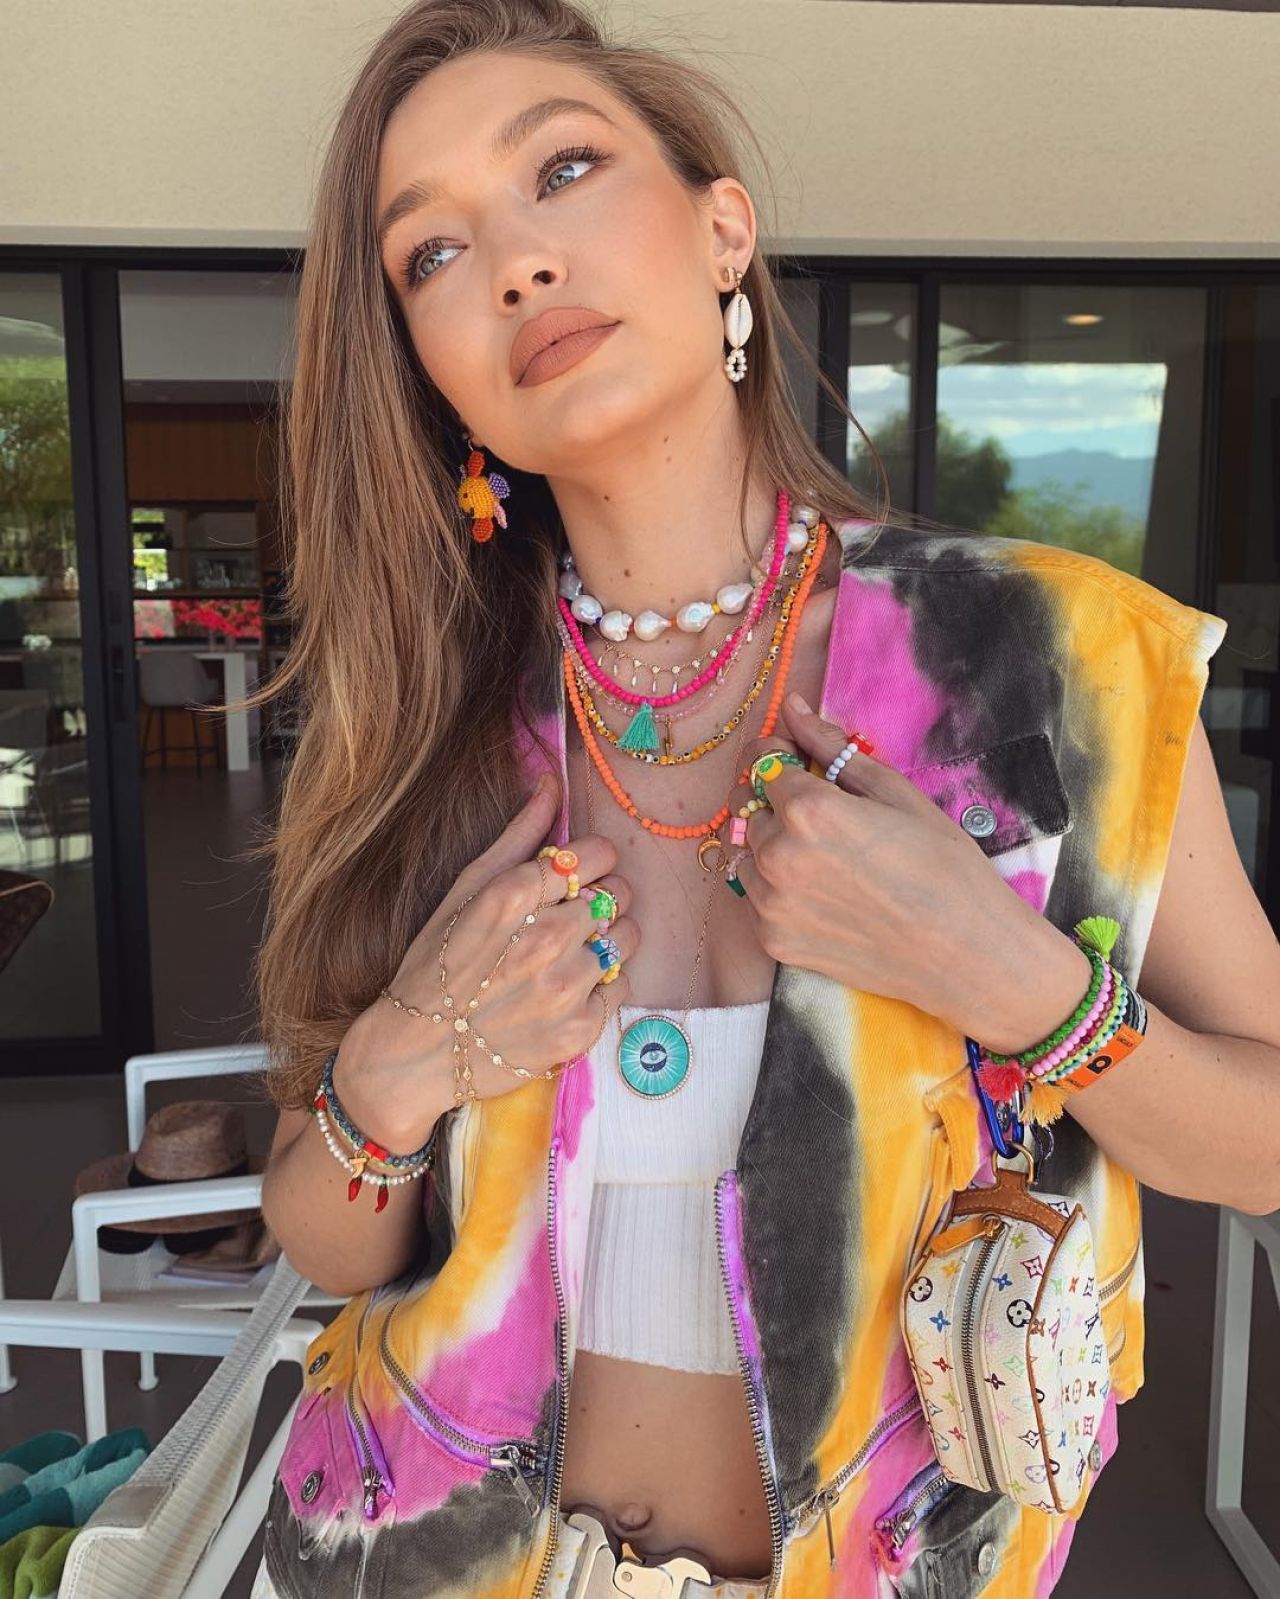 Siêu mẫu Gigi Hadid xuất hiện nổi bật tại Coachella 2019 với bộ trang phục tie-dye và nhiều lớp vòng cổ, vòng tay đa sắc màu. (Ảnh: Celeb Private)